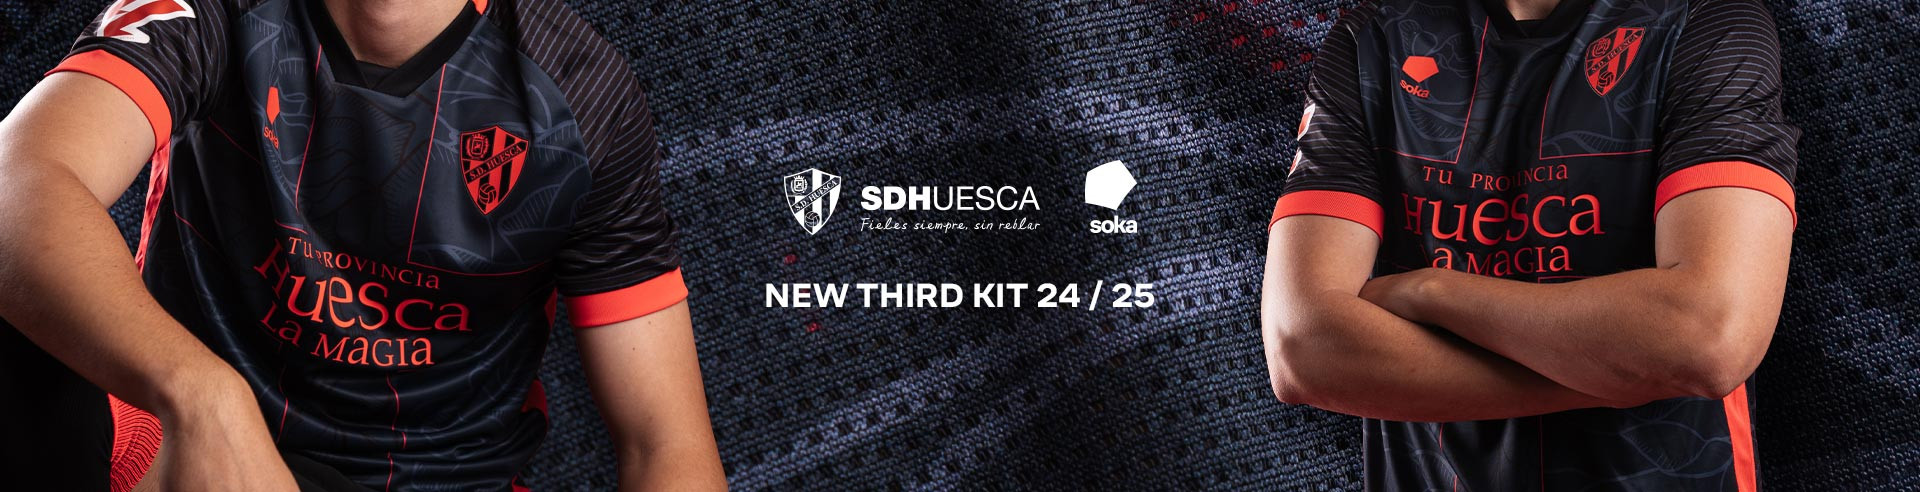 soka sd huesca third kit 24 25 es